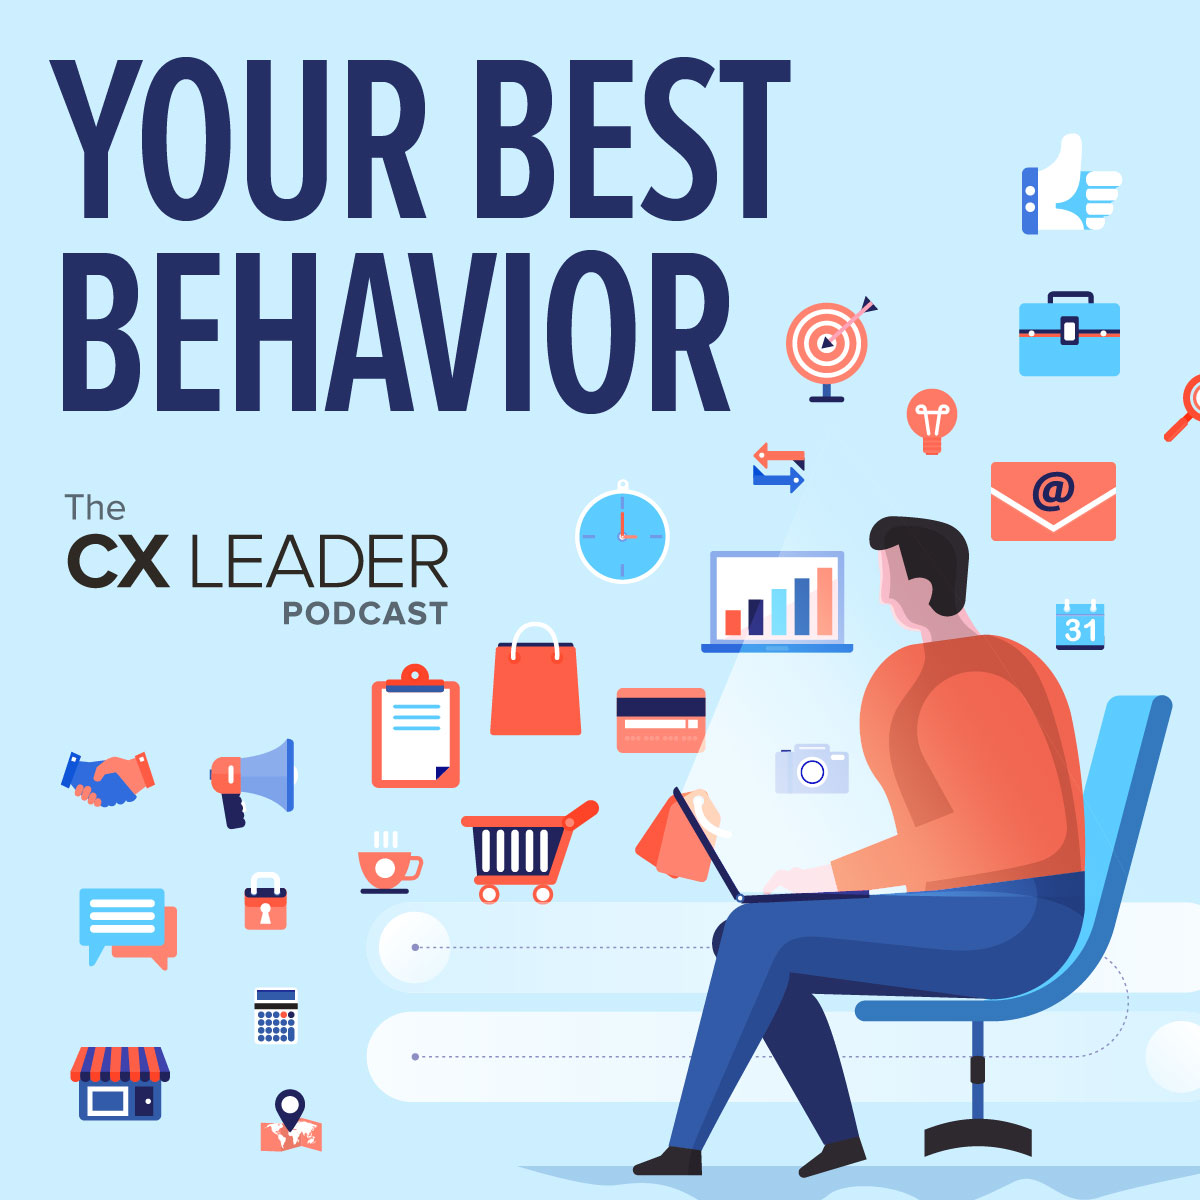 Your Best Behavior